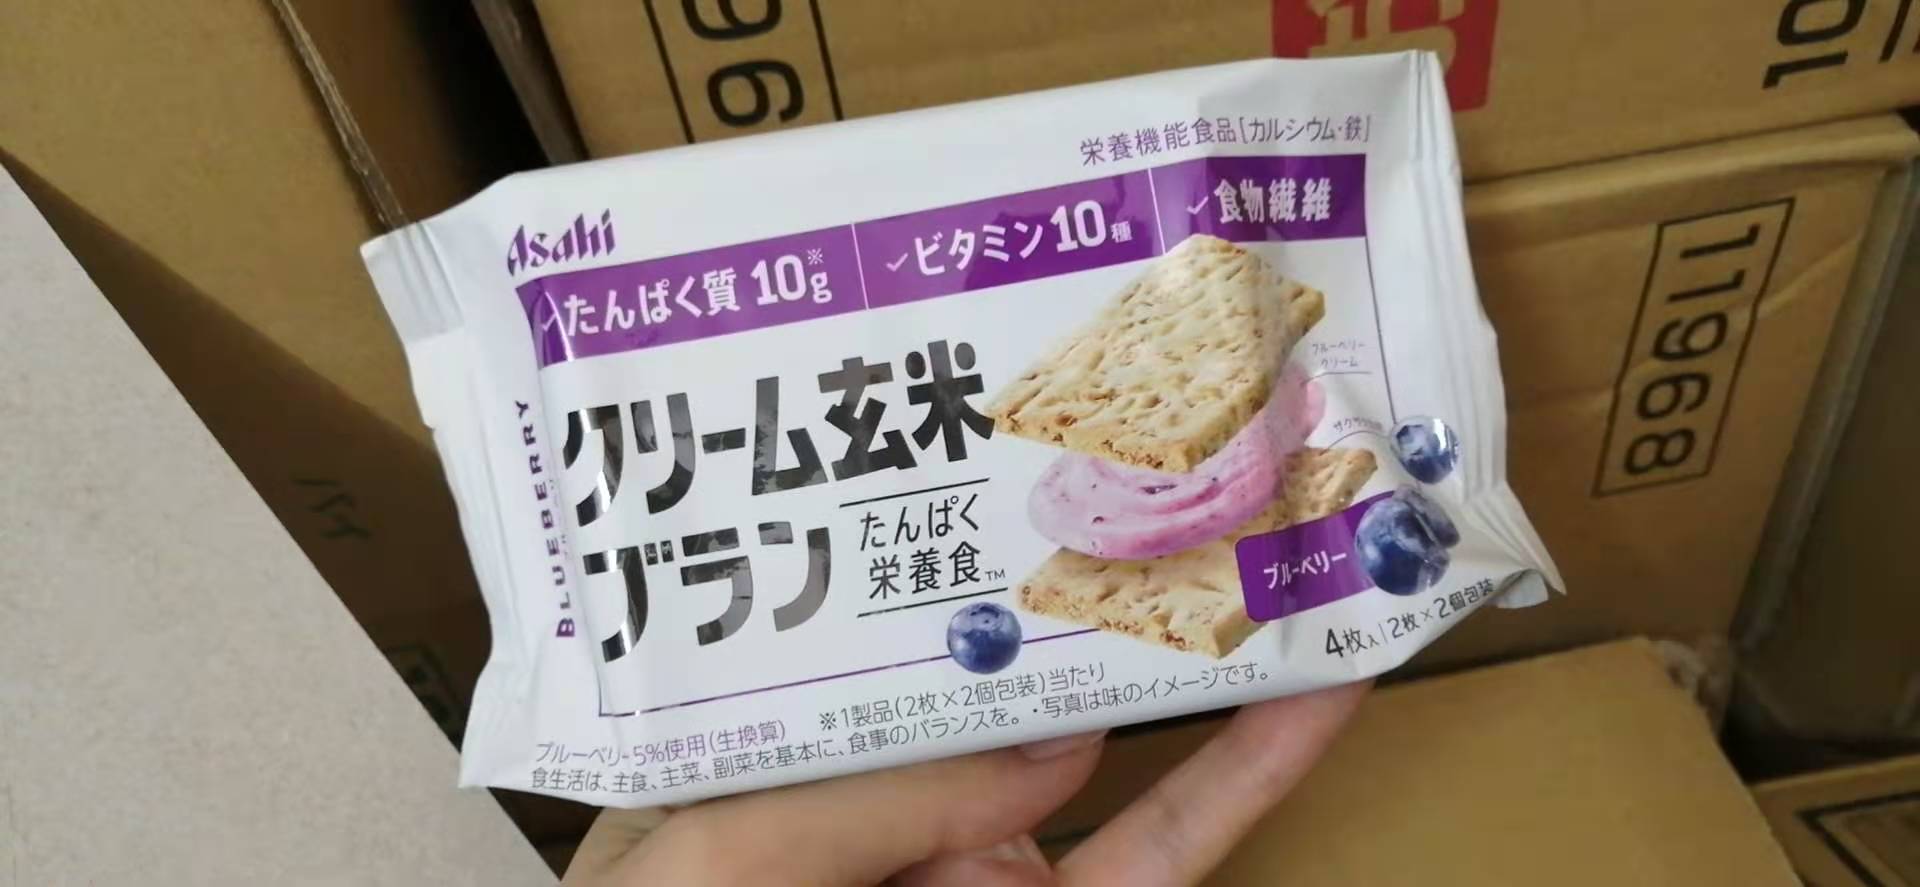 ขนมญี่ปุ่น บลูเบอรี่ Asahi Cracker แครกเกอร์ข้าวกล้อง, รำข้าวสาลี  ขนมสุขภาพ มีวิตามินและแร่ธาตุ